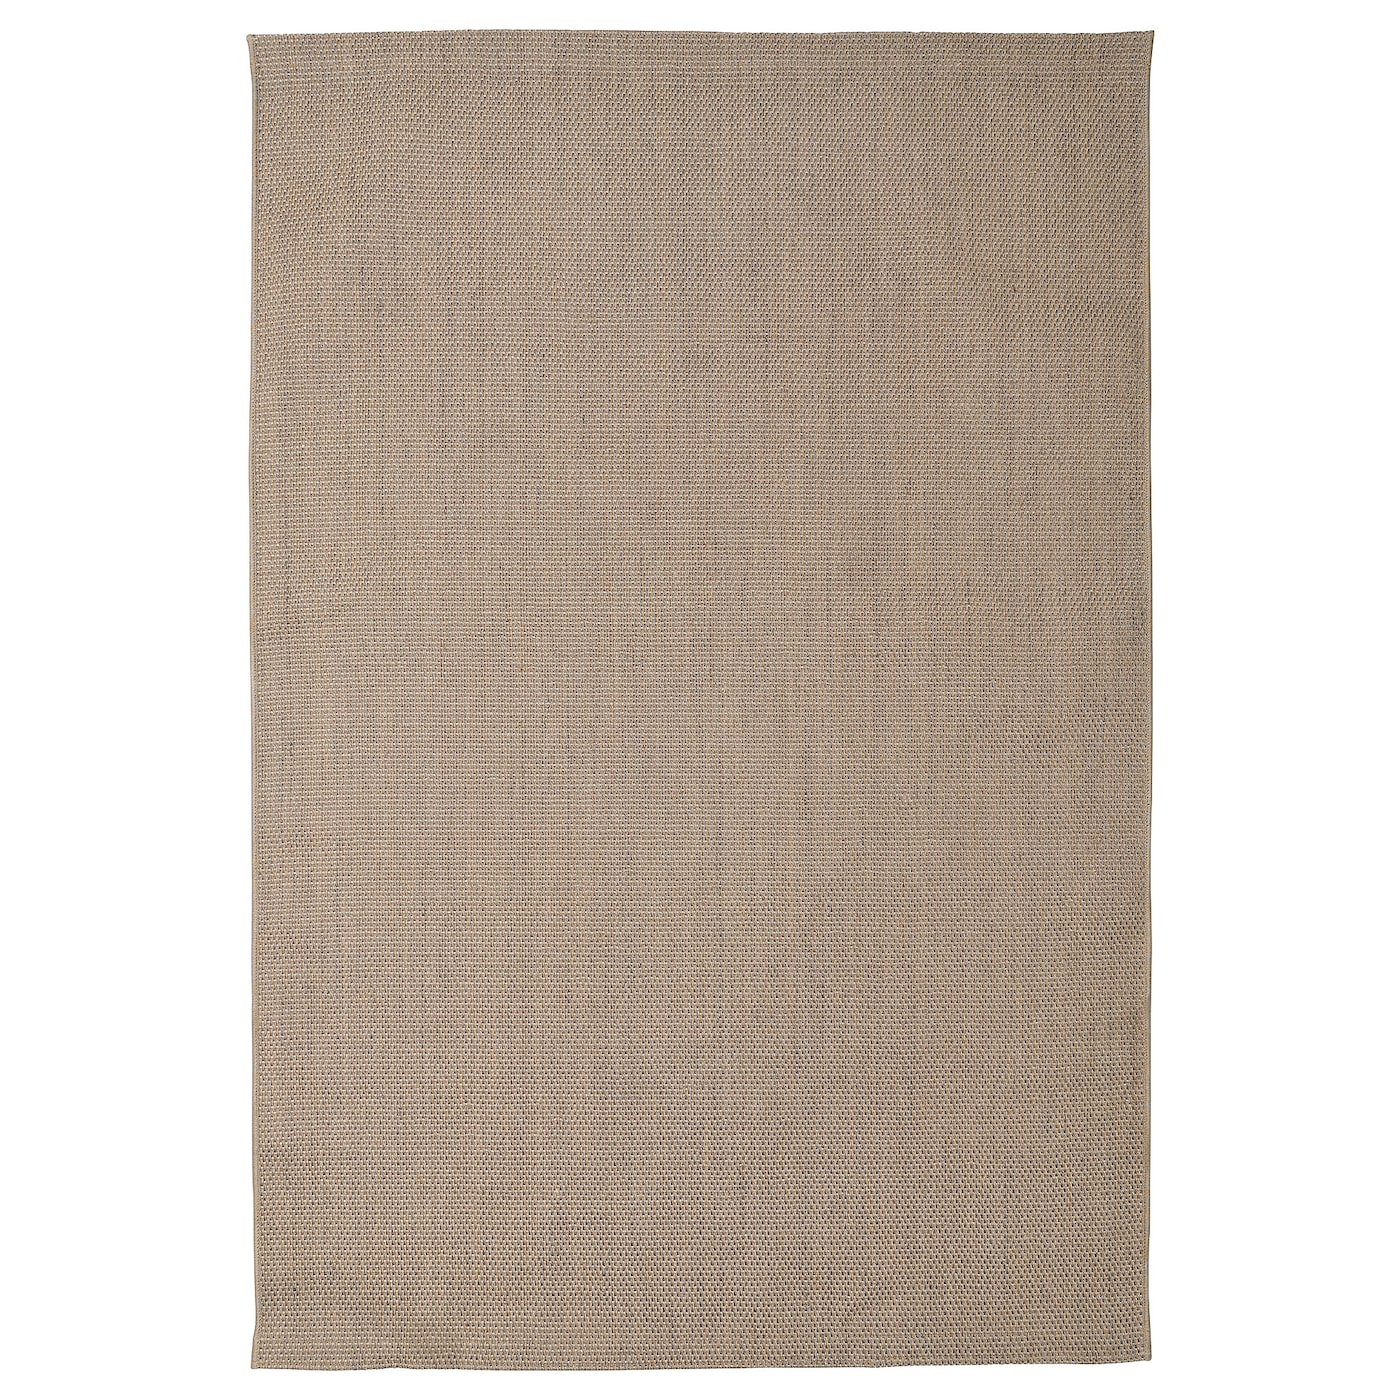 Джутовый ковер - IKEA VODSKOV/ВОДСКОВ ИКЕА, 195х133 см, светло-коричневый